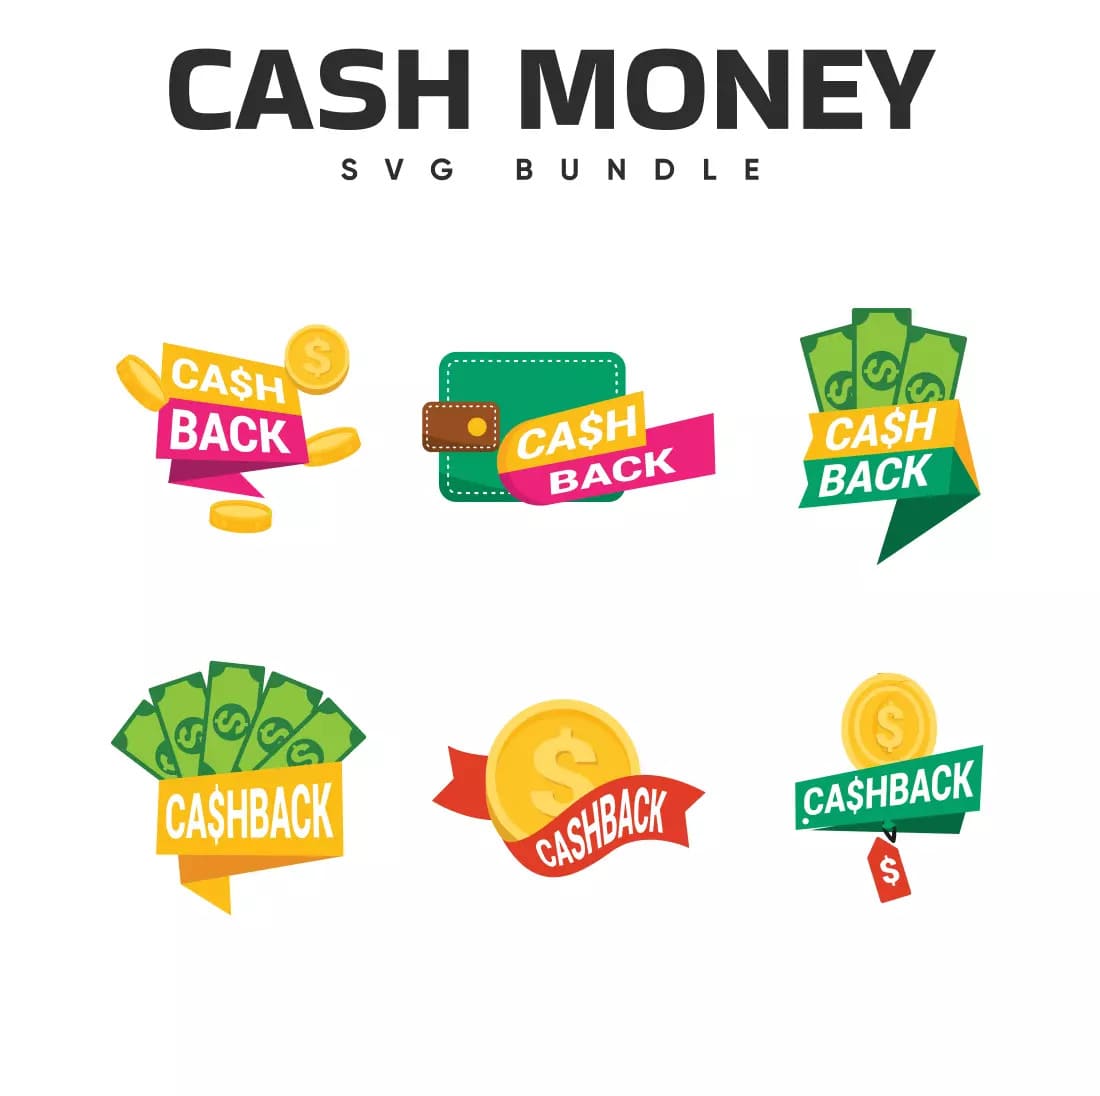 Cash Money SVG Bundle Preview.